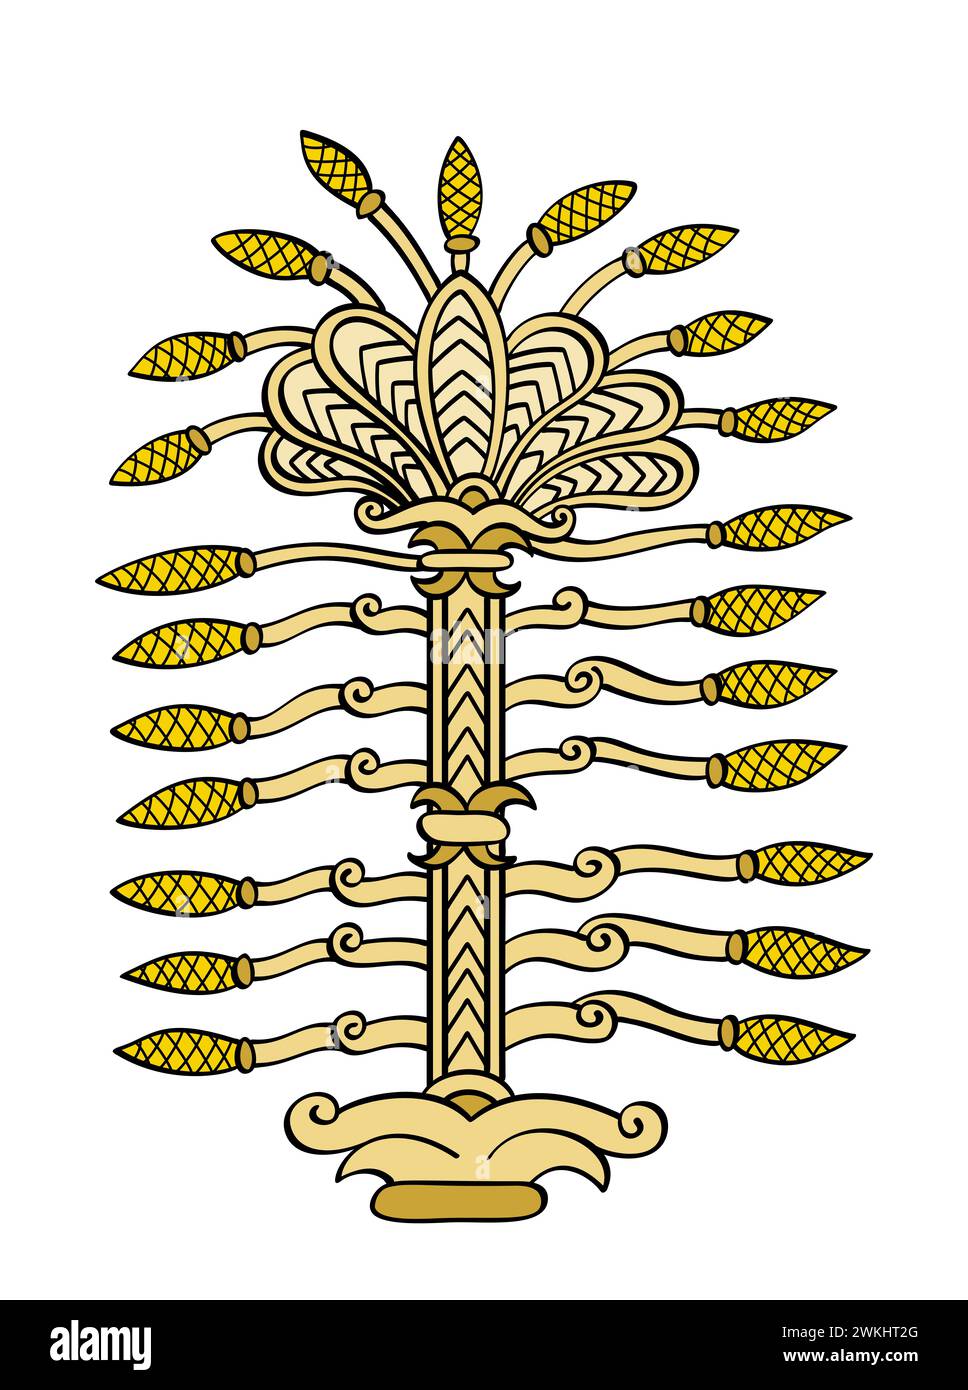 Baum des Lebens, Symbol eines heiligen Baumes im antiken Mesopotamien, wie er auf einem Brustschild des Königs Ashurbanipal dargestellt wurde. Wichtiges religiöses Symbol. Stockfoto